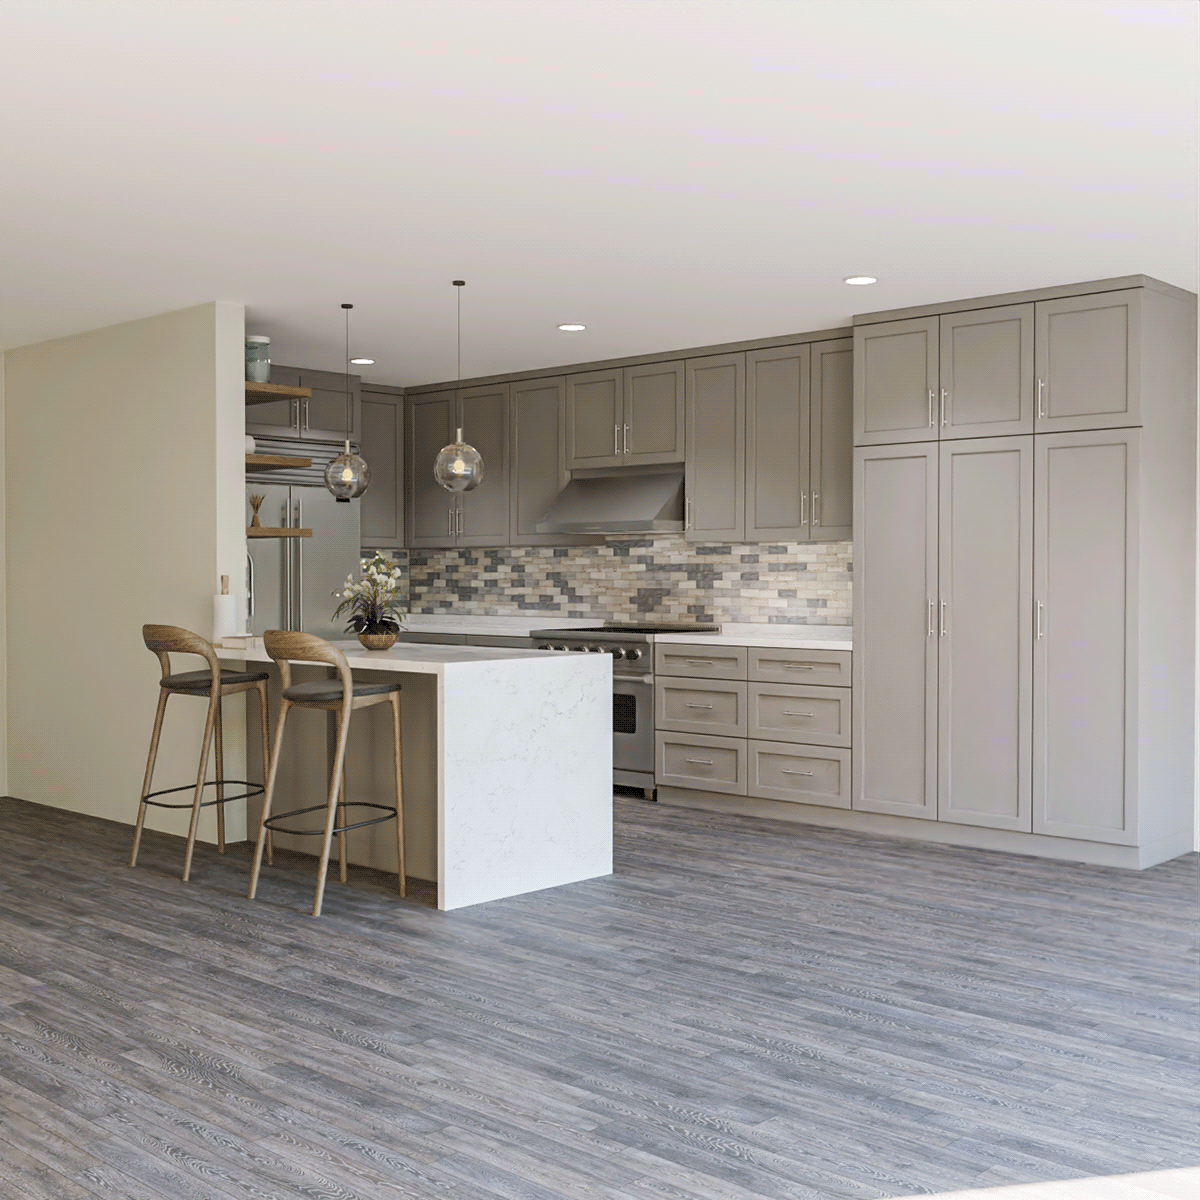 cabinetry kitchen Interior architecture Render visualization 3ds max corona vray CGI